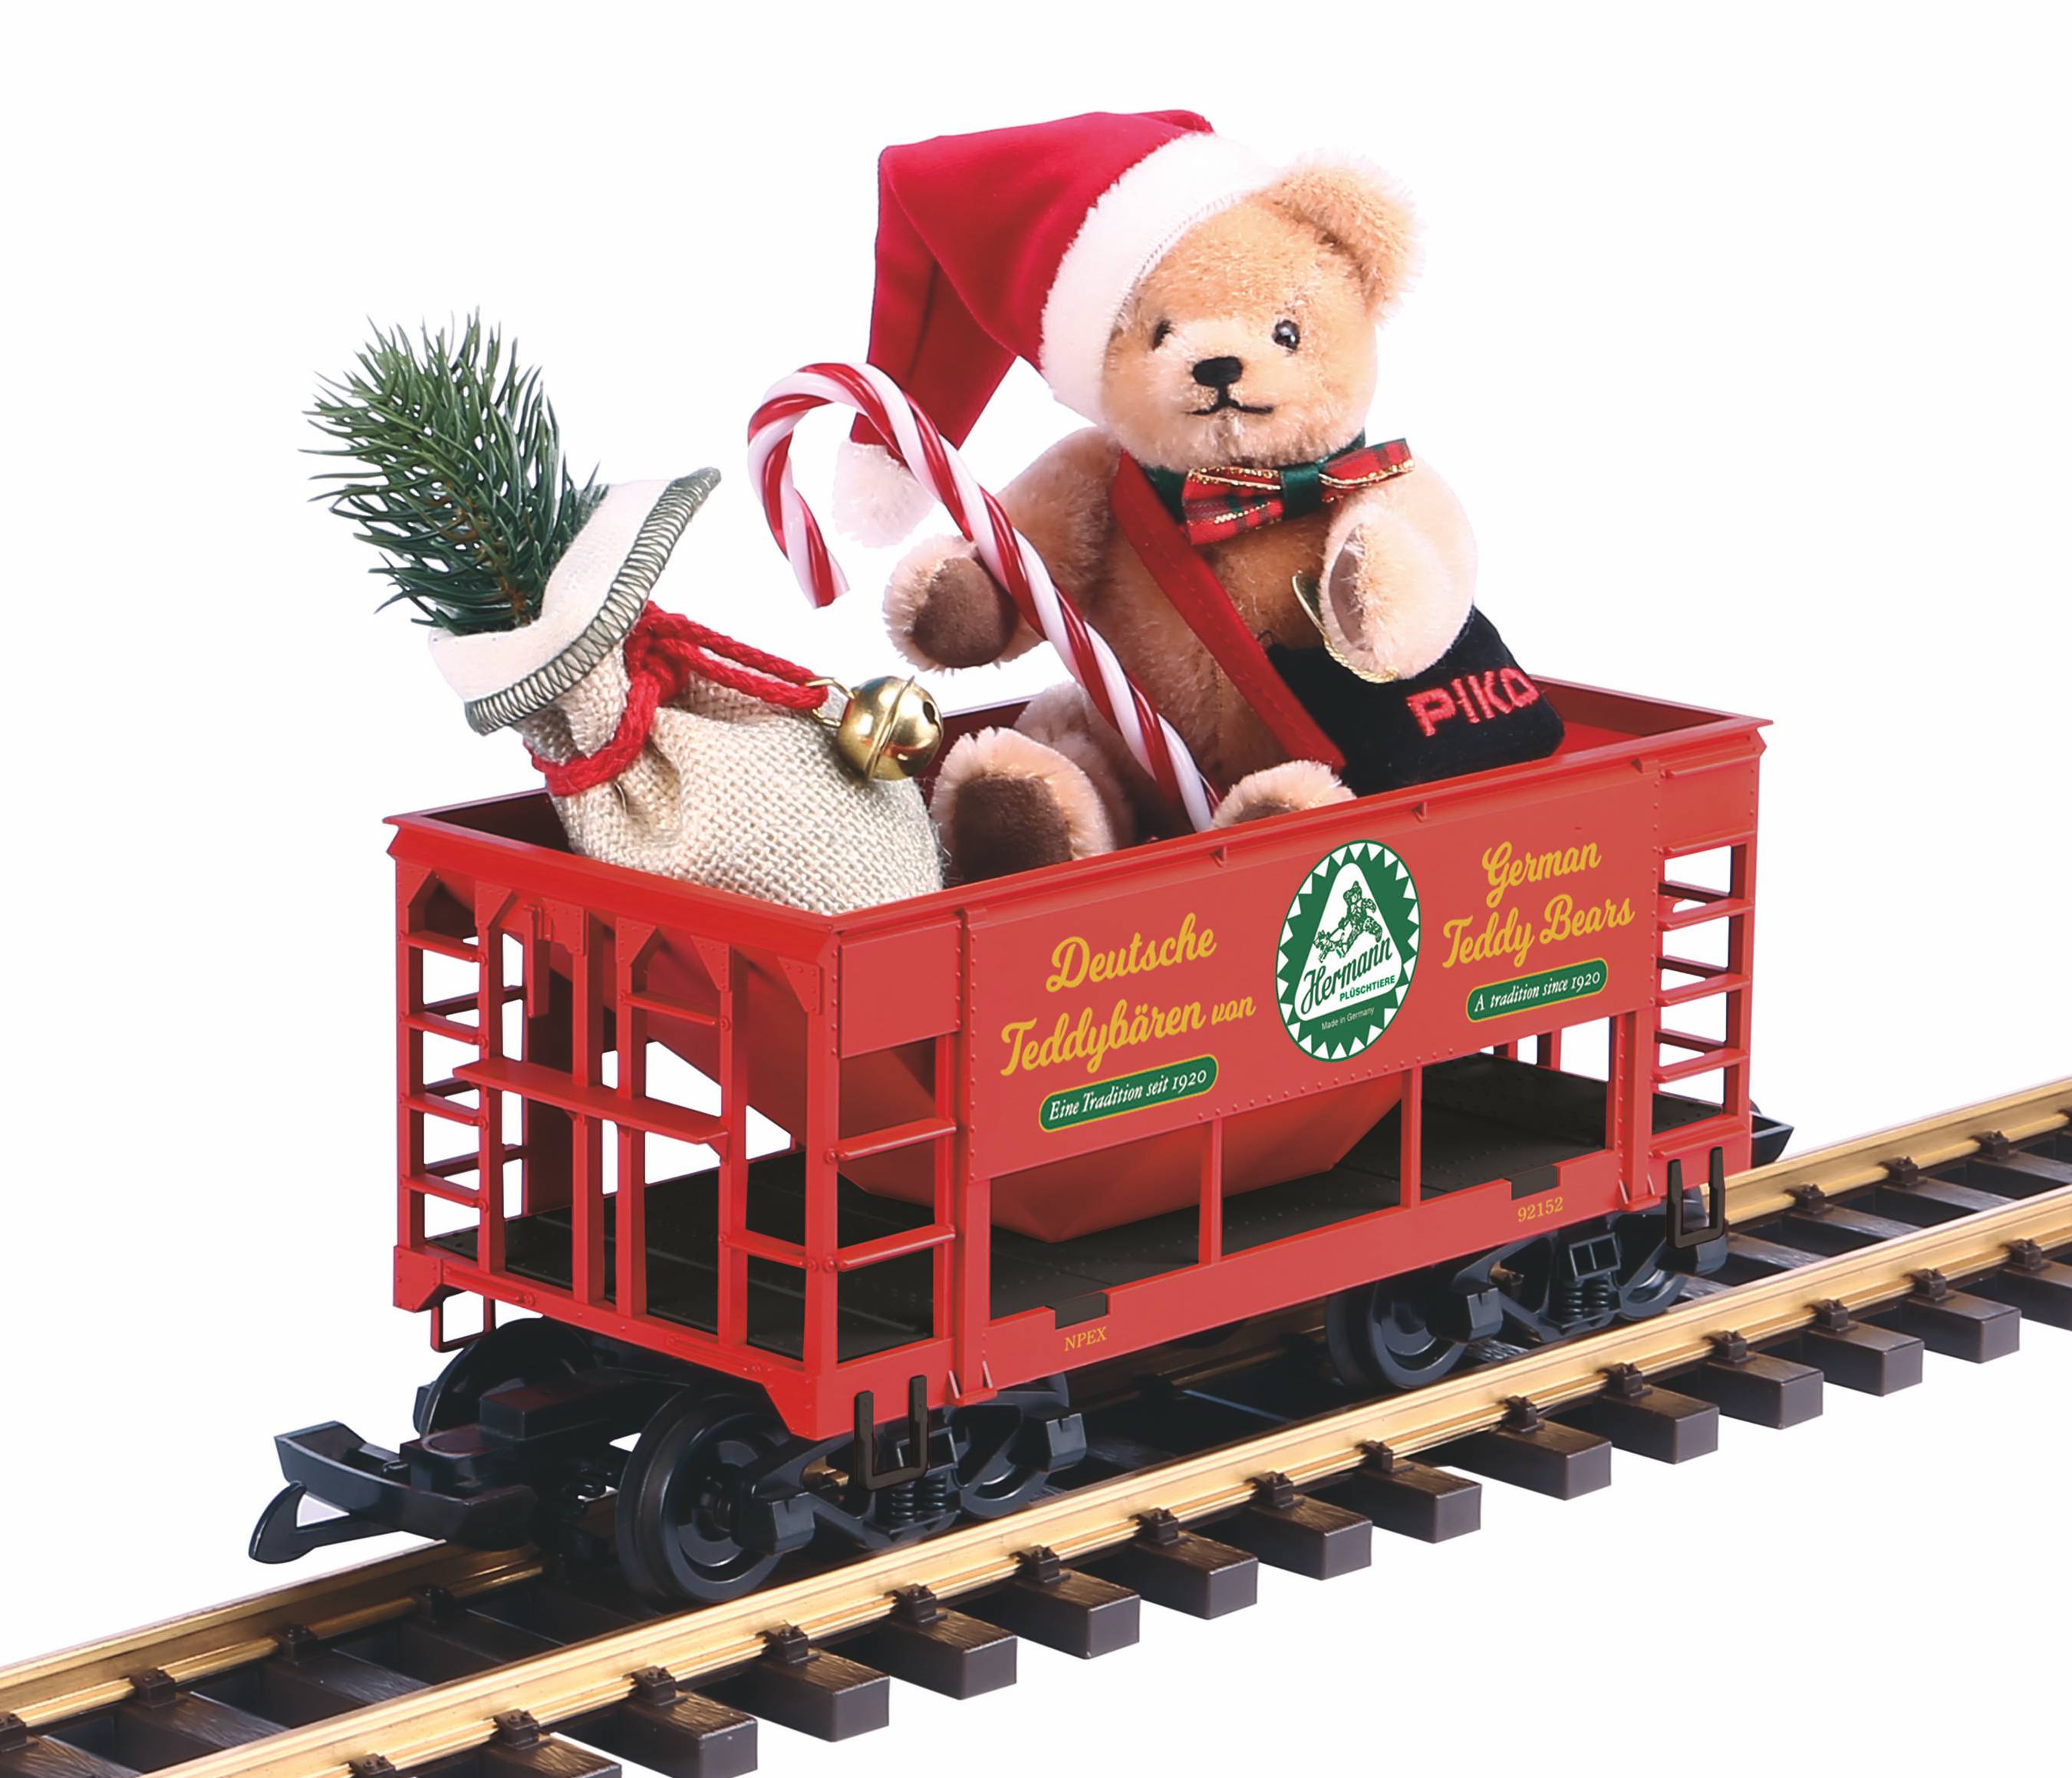 PIKO 2018 - Weihnachtswagen - Schttguwagen mit Hermann Teddy, North Pole Express, Weihnachtswagen, Merry Christmas 